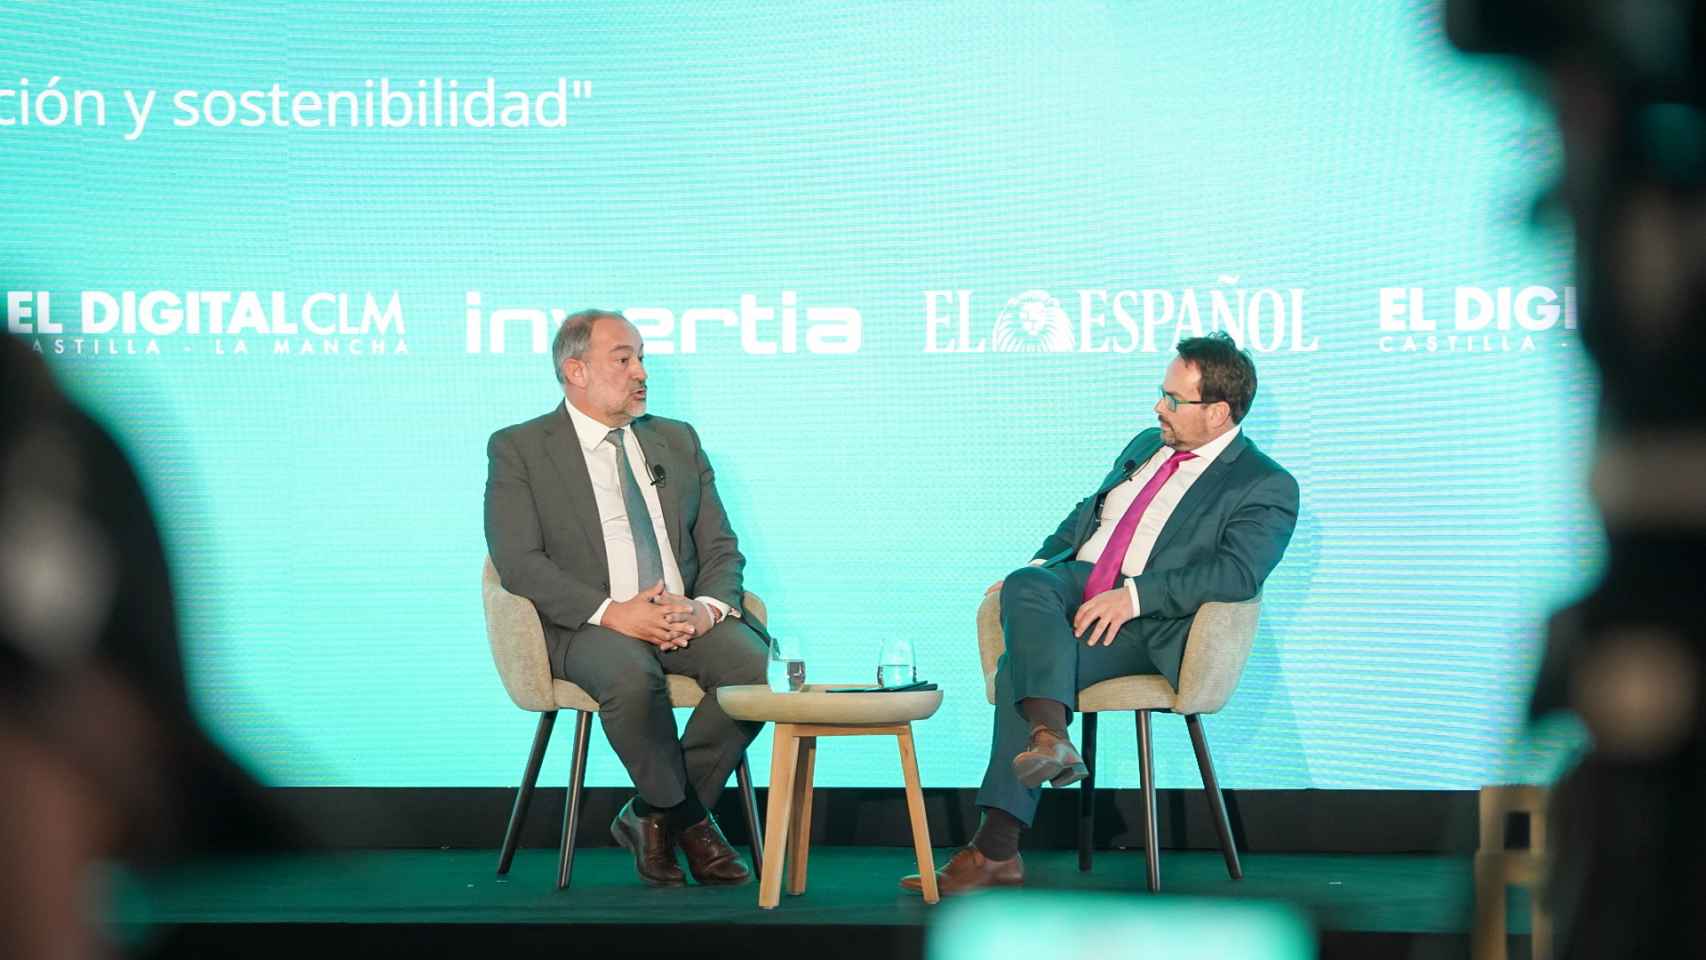 José Julián Garde López-Brea, rector de la Universidad de Castilla-La Mancha, durante su conversación con